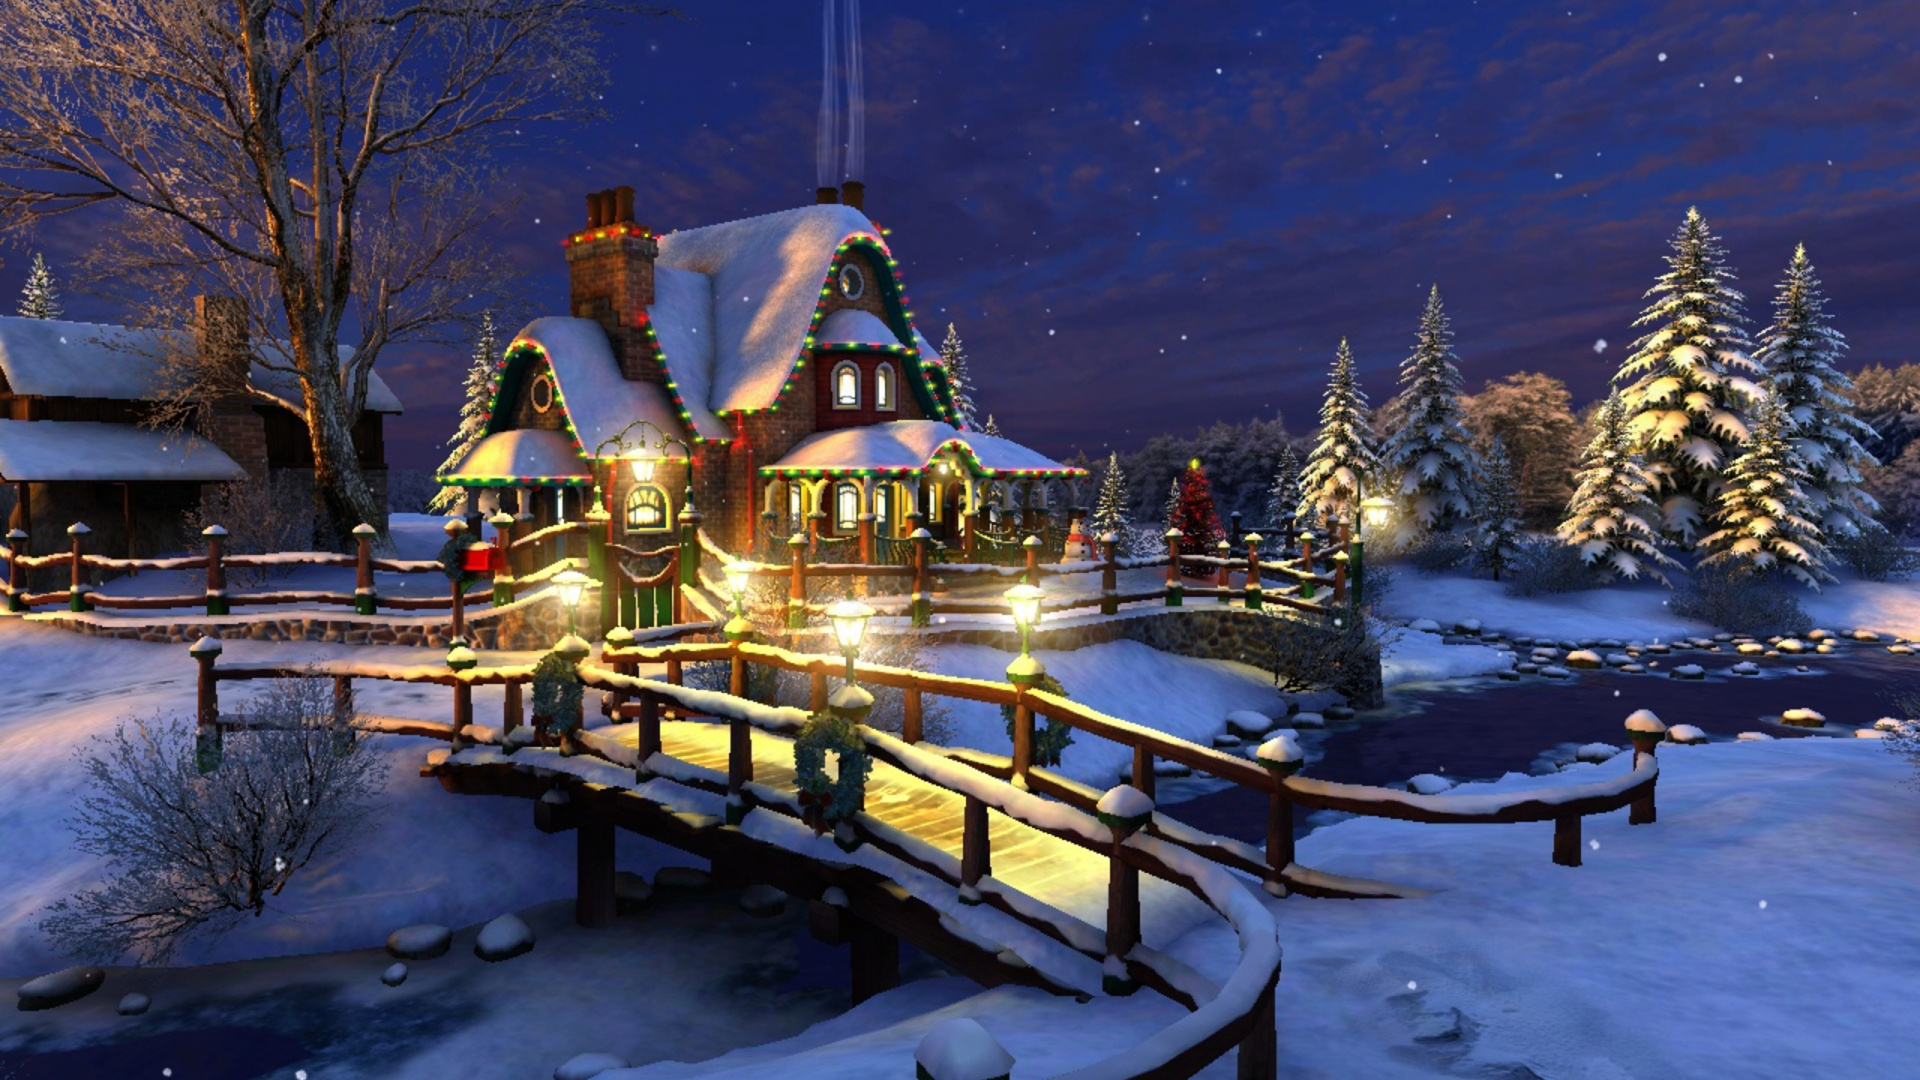 冻结, 圣诞前夕, 礼物, 旅游景点, 圣诞树 壁纸 1920x1080 允许